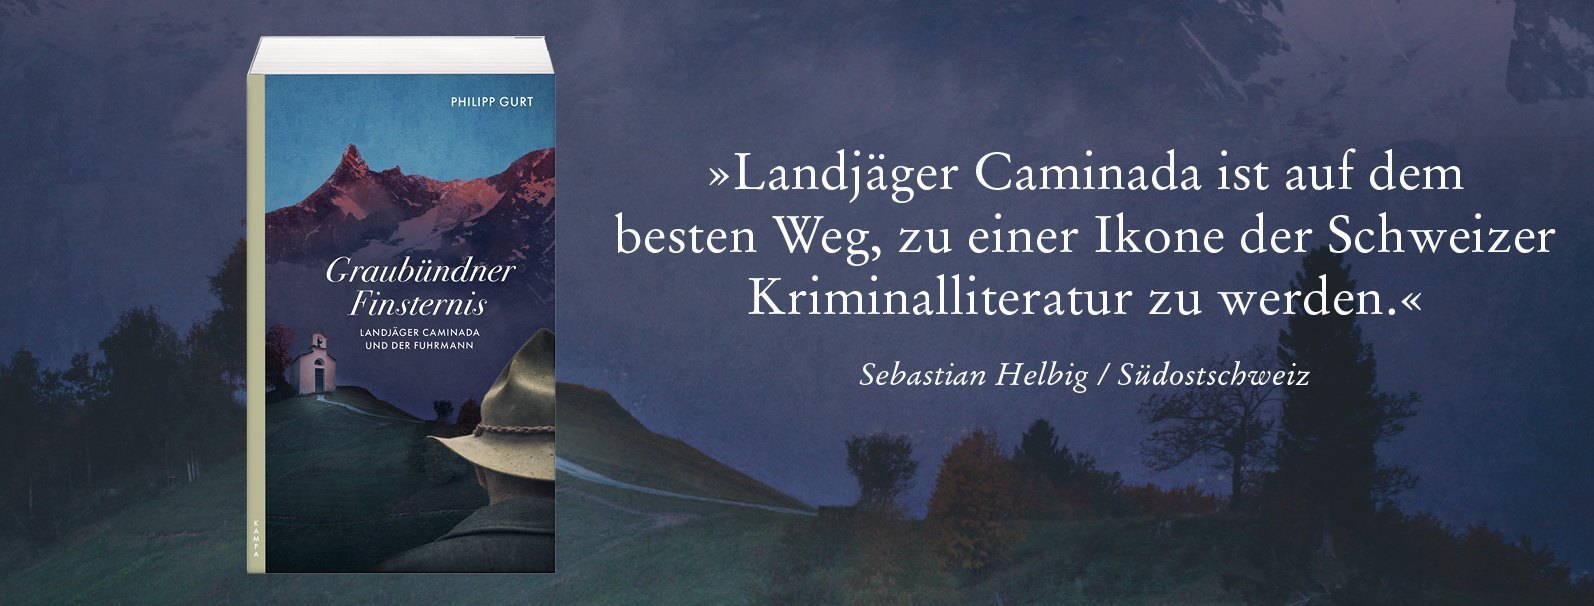 Philipp Gurt Biografie und Kriminalromane